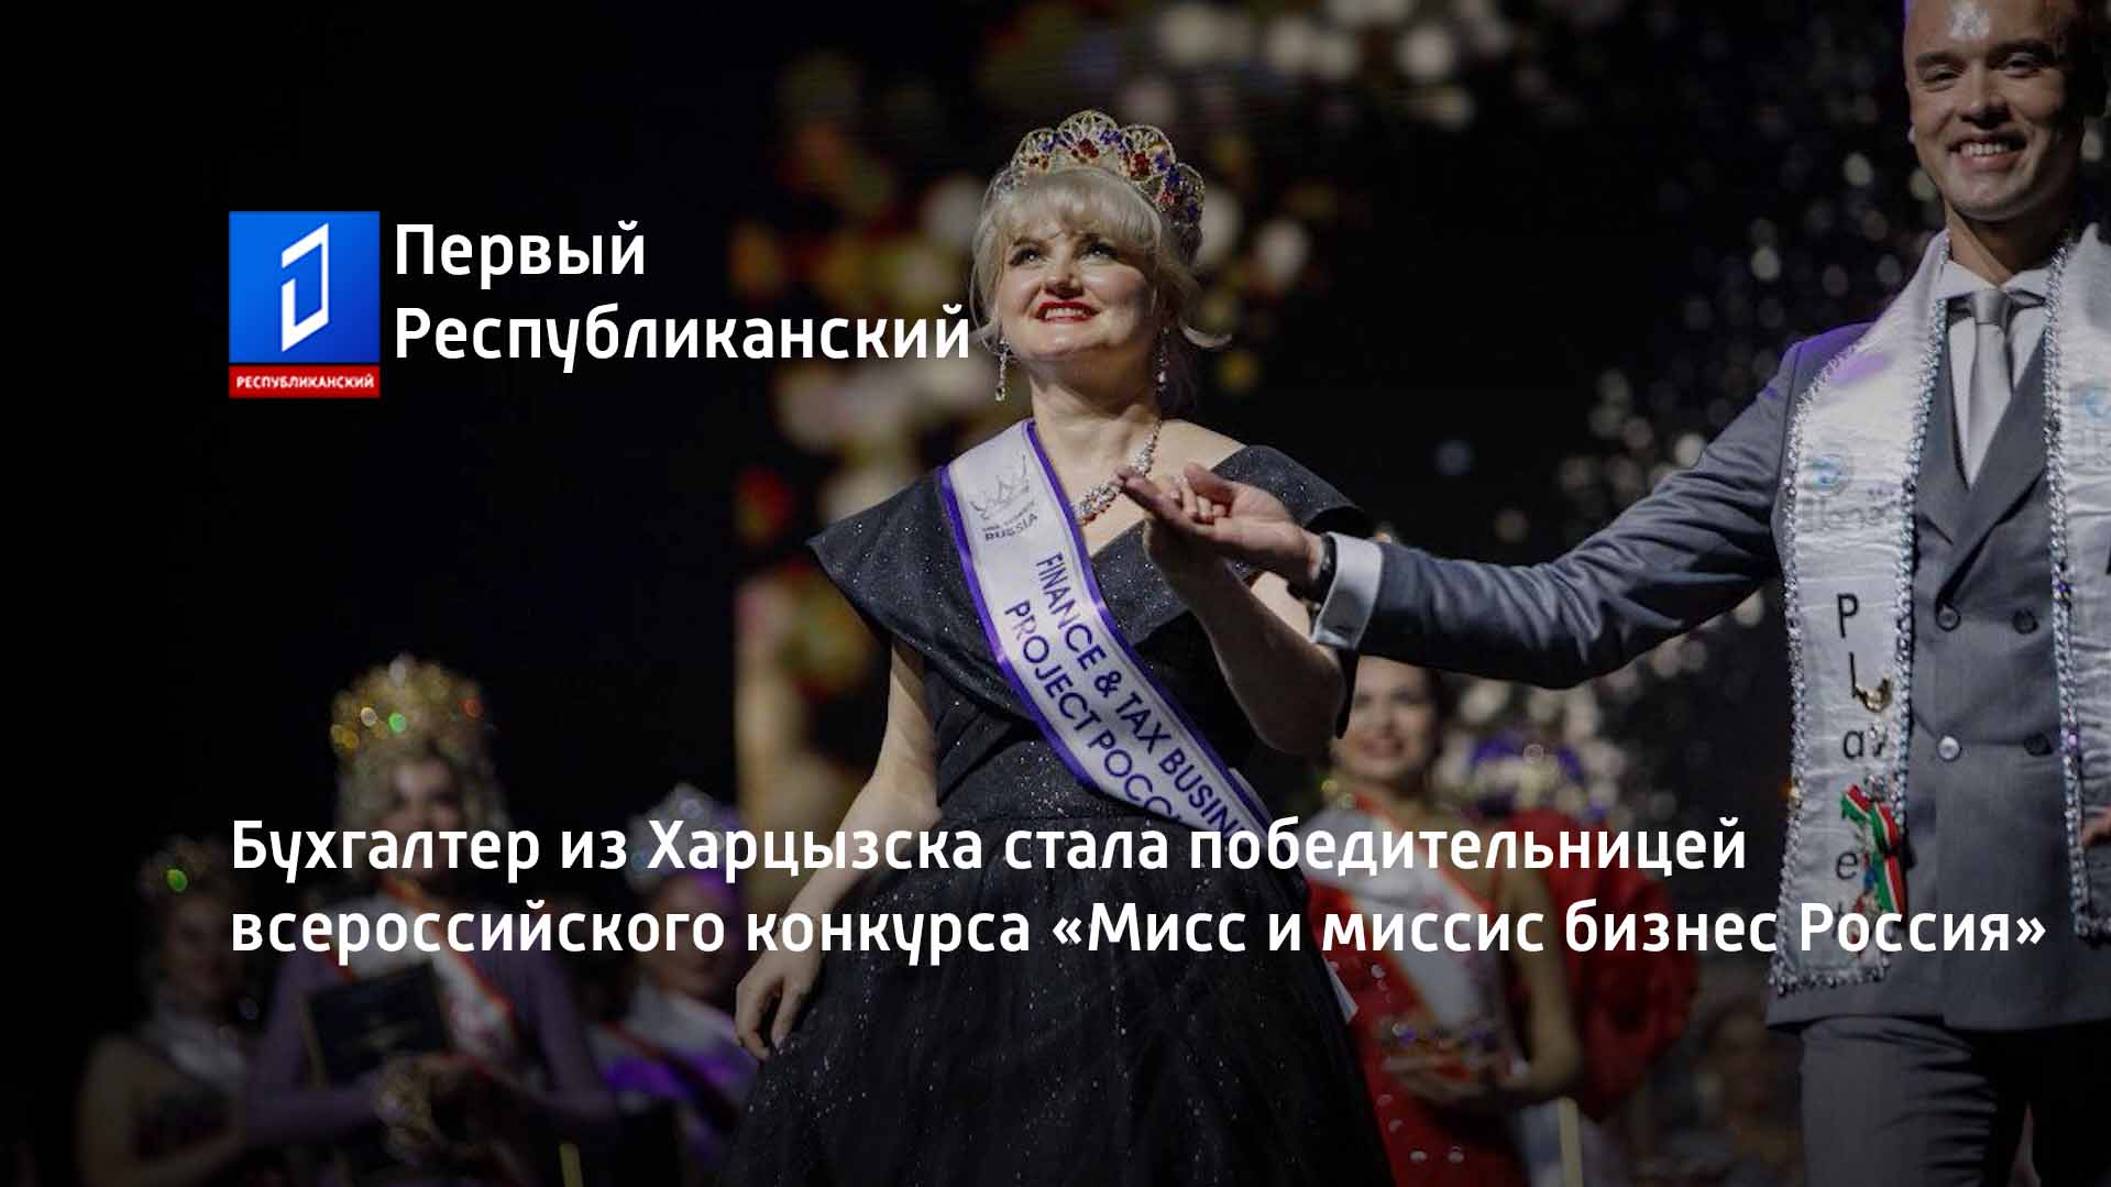 Бухгалтер из Харцызска стала победительницей всероссийского конкурса «Мисс и миссис бизнес Россия»